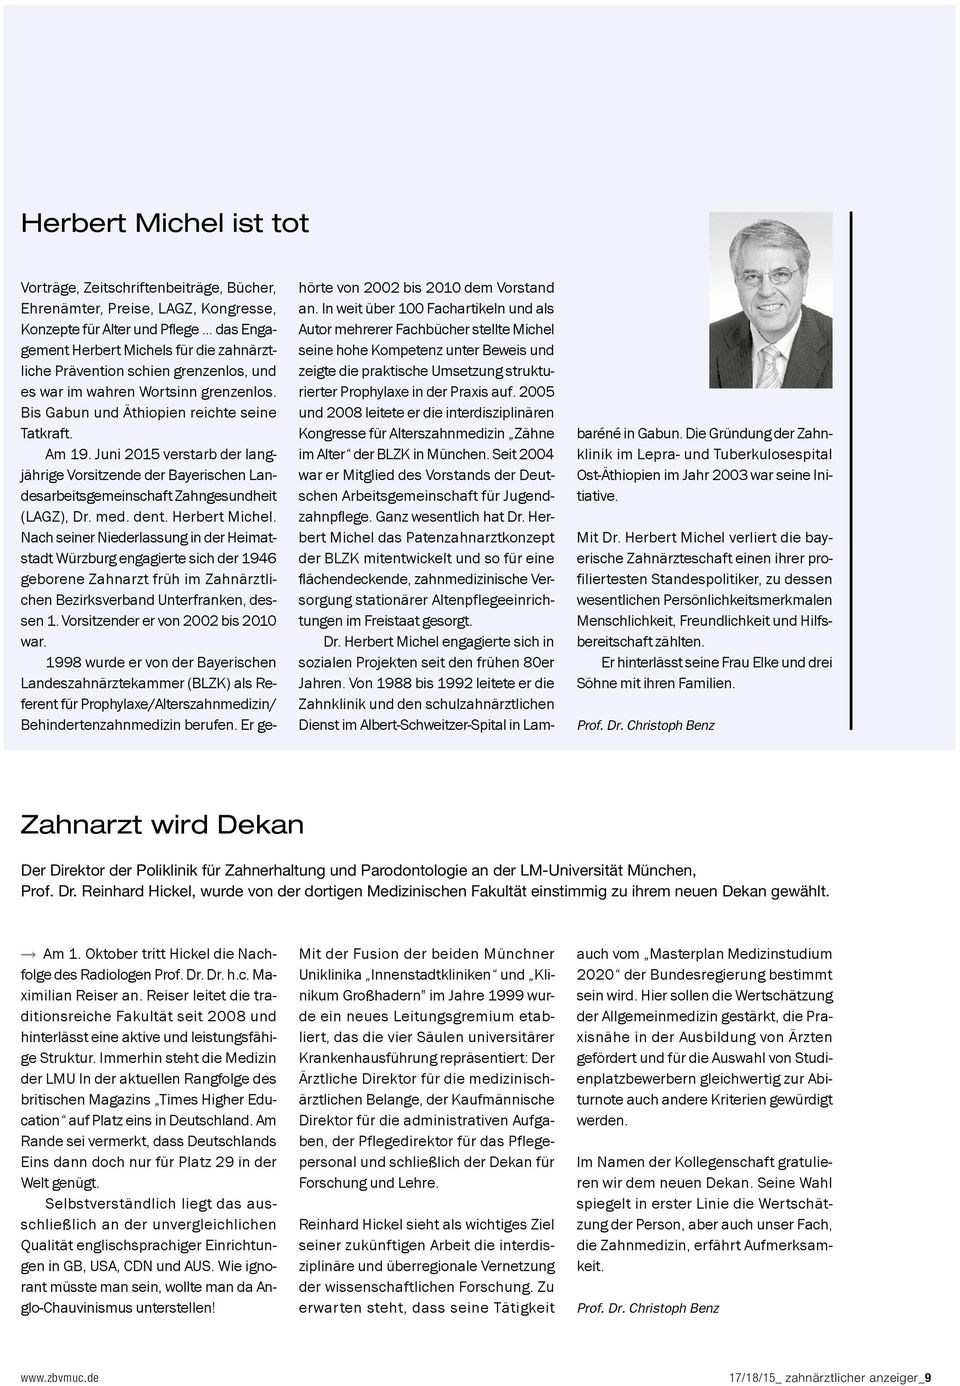 Juni 2015 verstarb der langjäh rige Vorsitzende der Bayerischen Landesarbeitsgemeinschaft Zahngesundheit (LAGZ), Dr. med. dent. Herbert Michel.